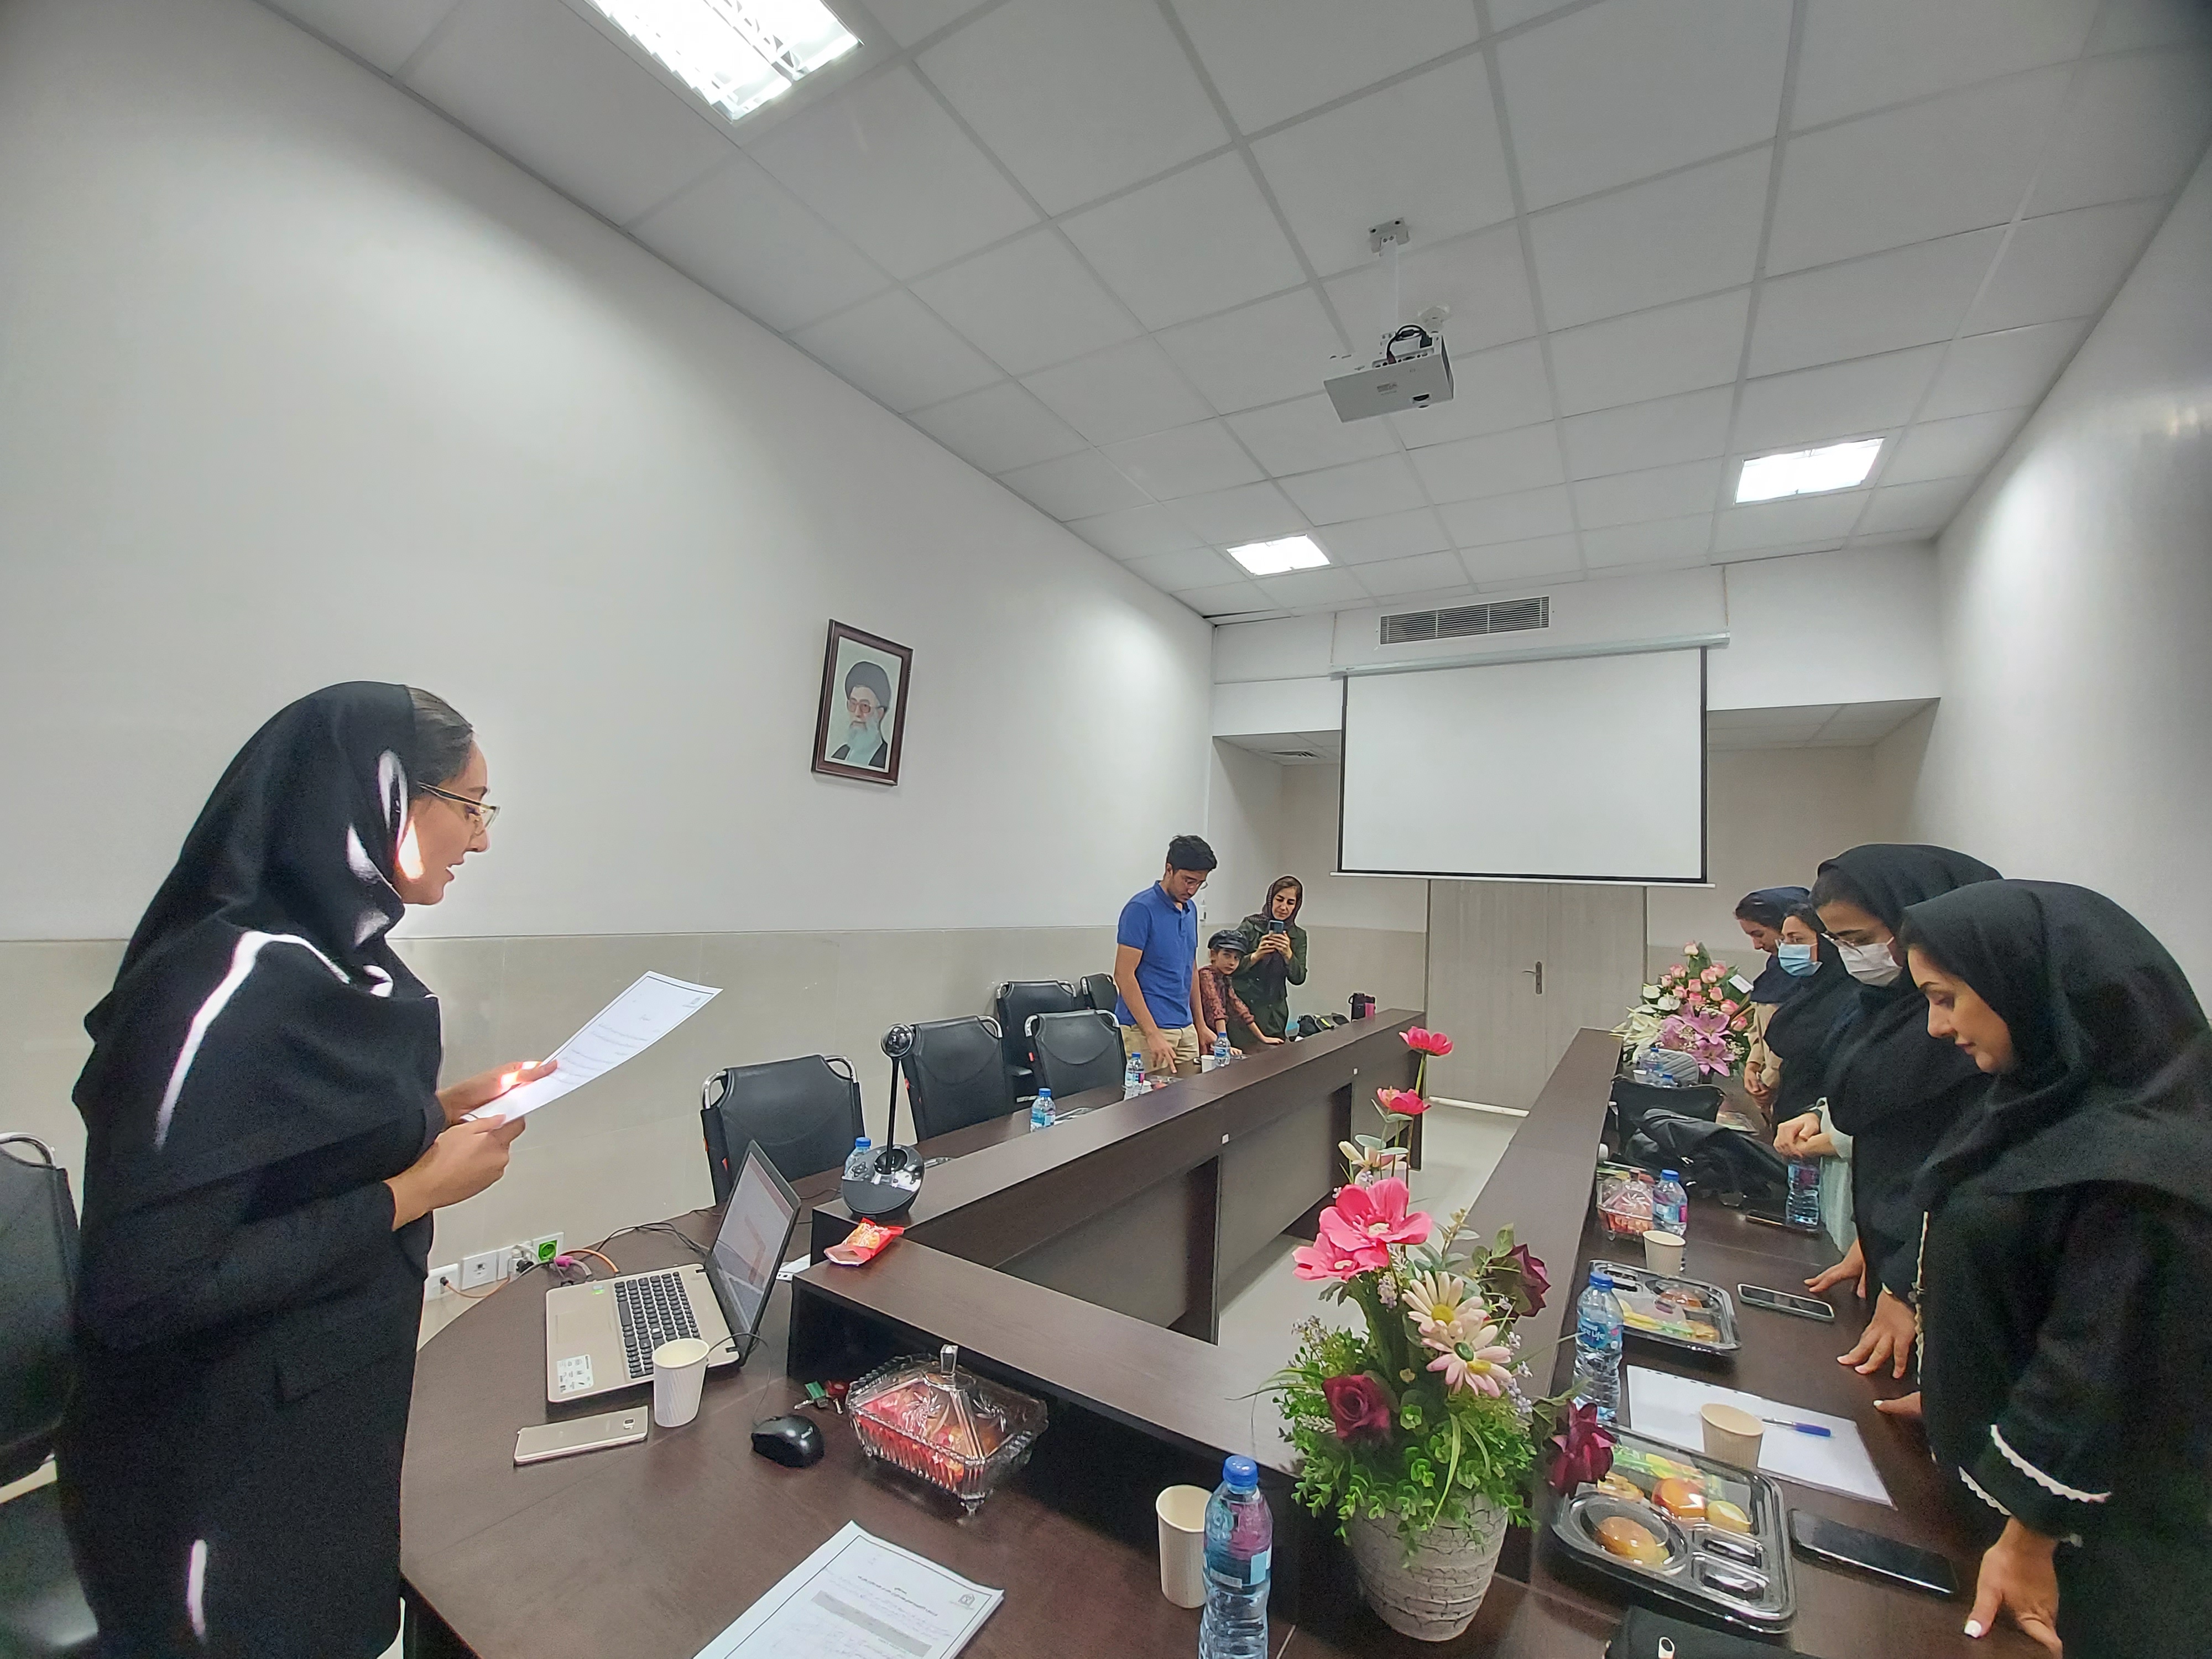 برگزاری جلسه دفاع از پایان نامه سرکار خانم یاسمین محجوبی